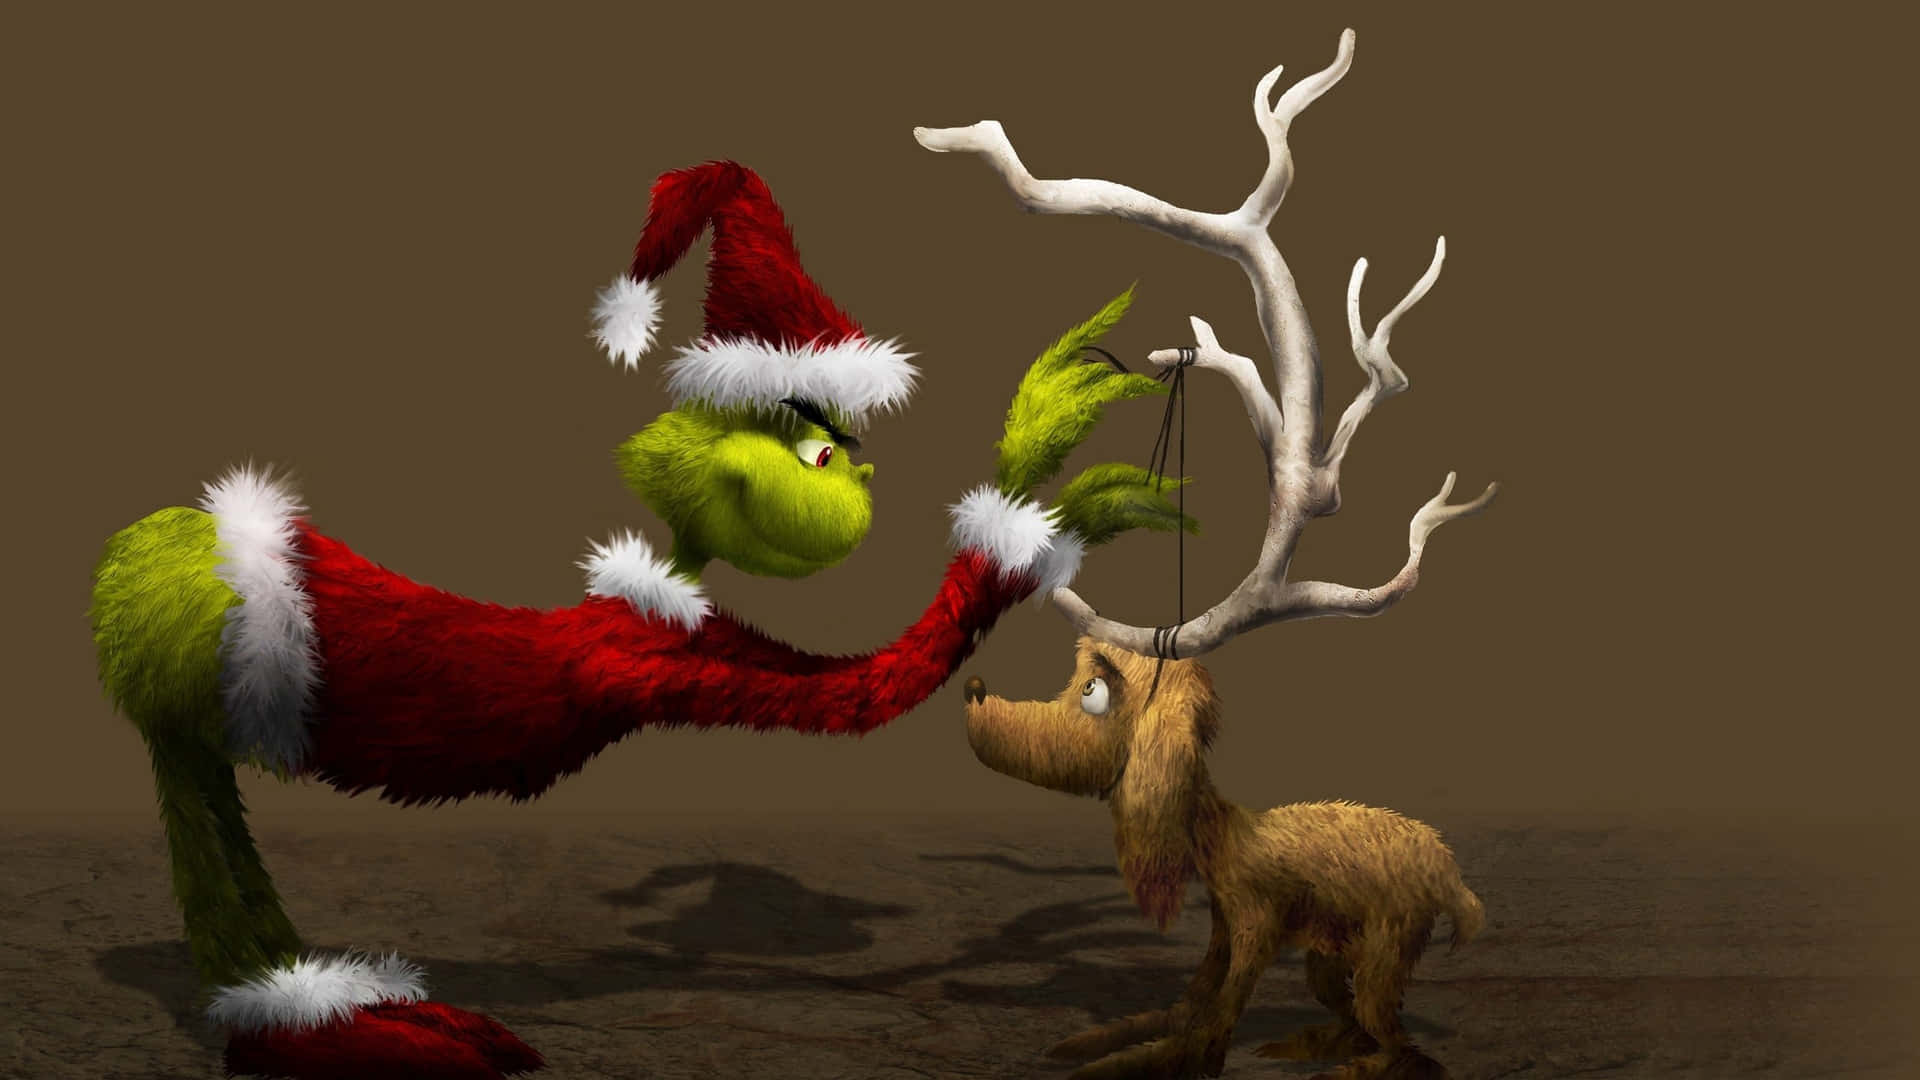 Ilgrinch - Babbo Natale - Sfondo Di Babbo Natale